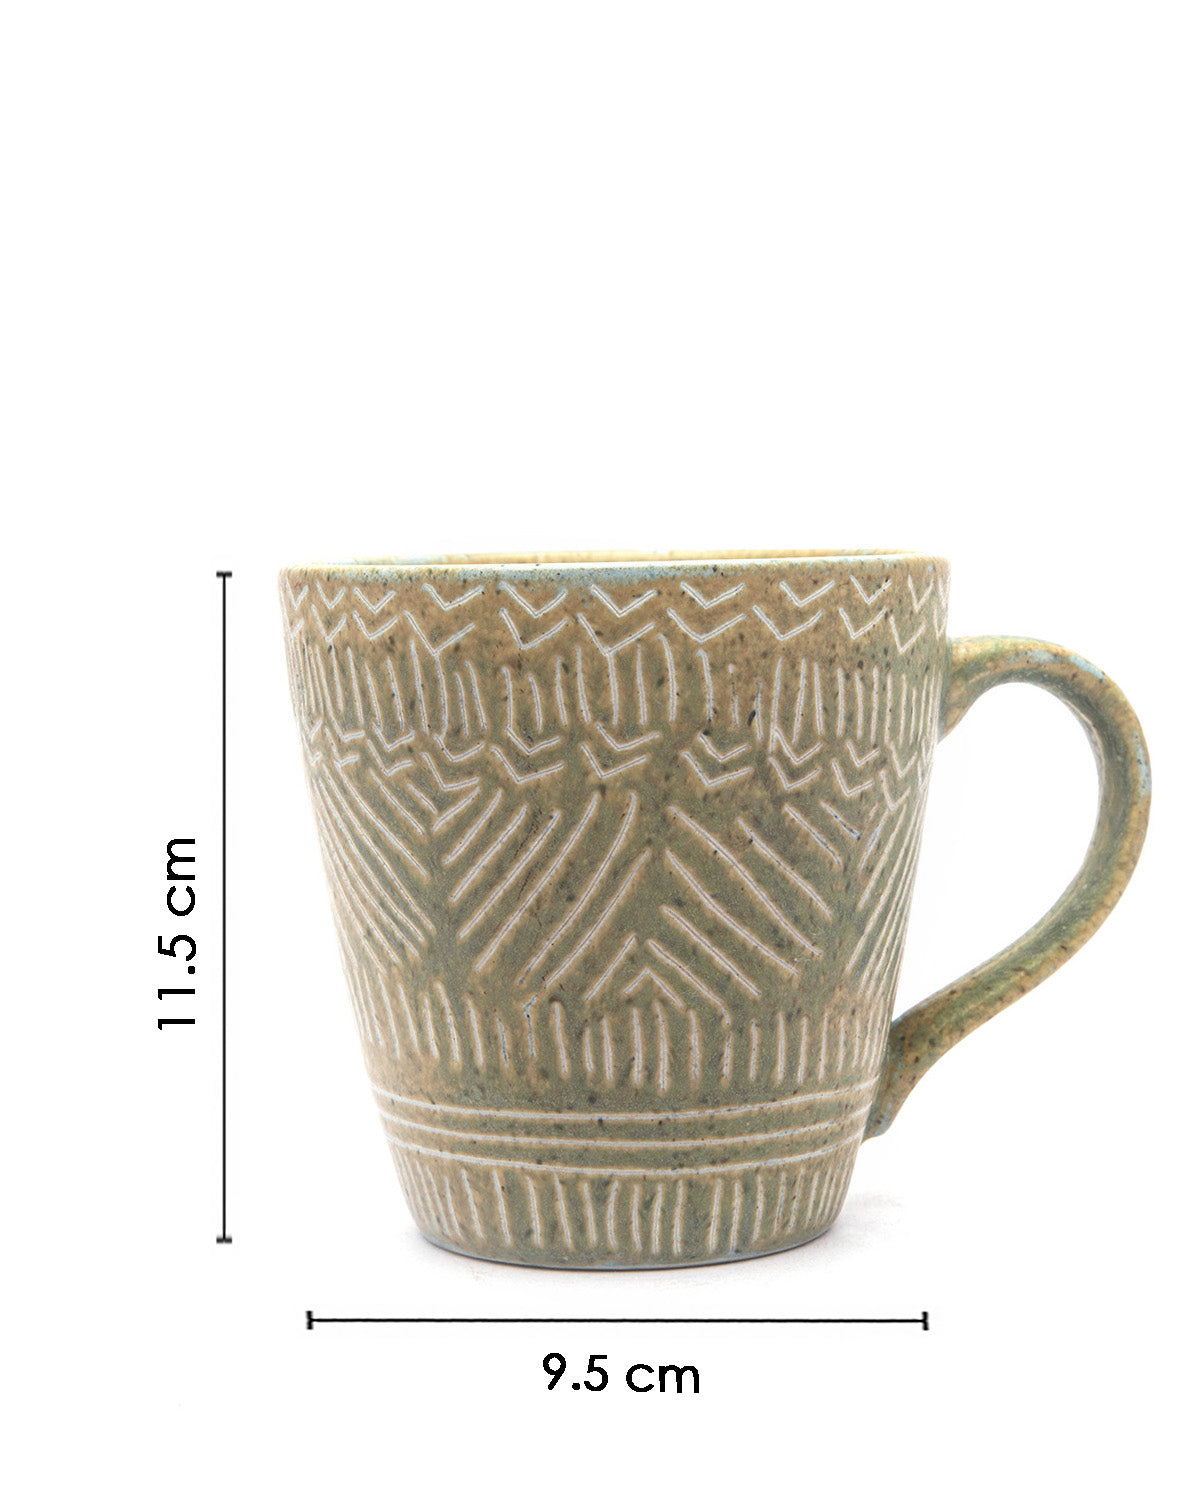 VON CASA Mug Set, Tea & Coffee Mug, Soup Mug, Stoneware, Antique Look, Green, Ceramic, Set of 2